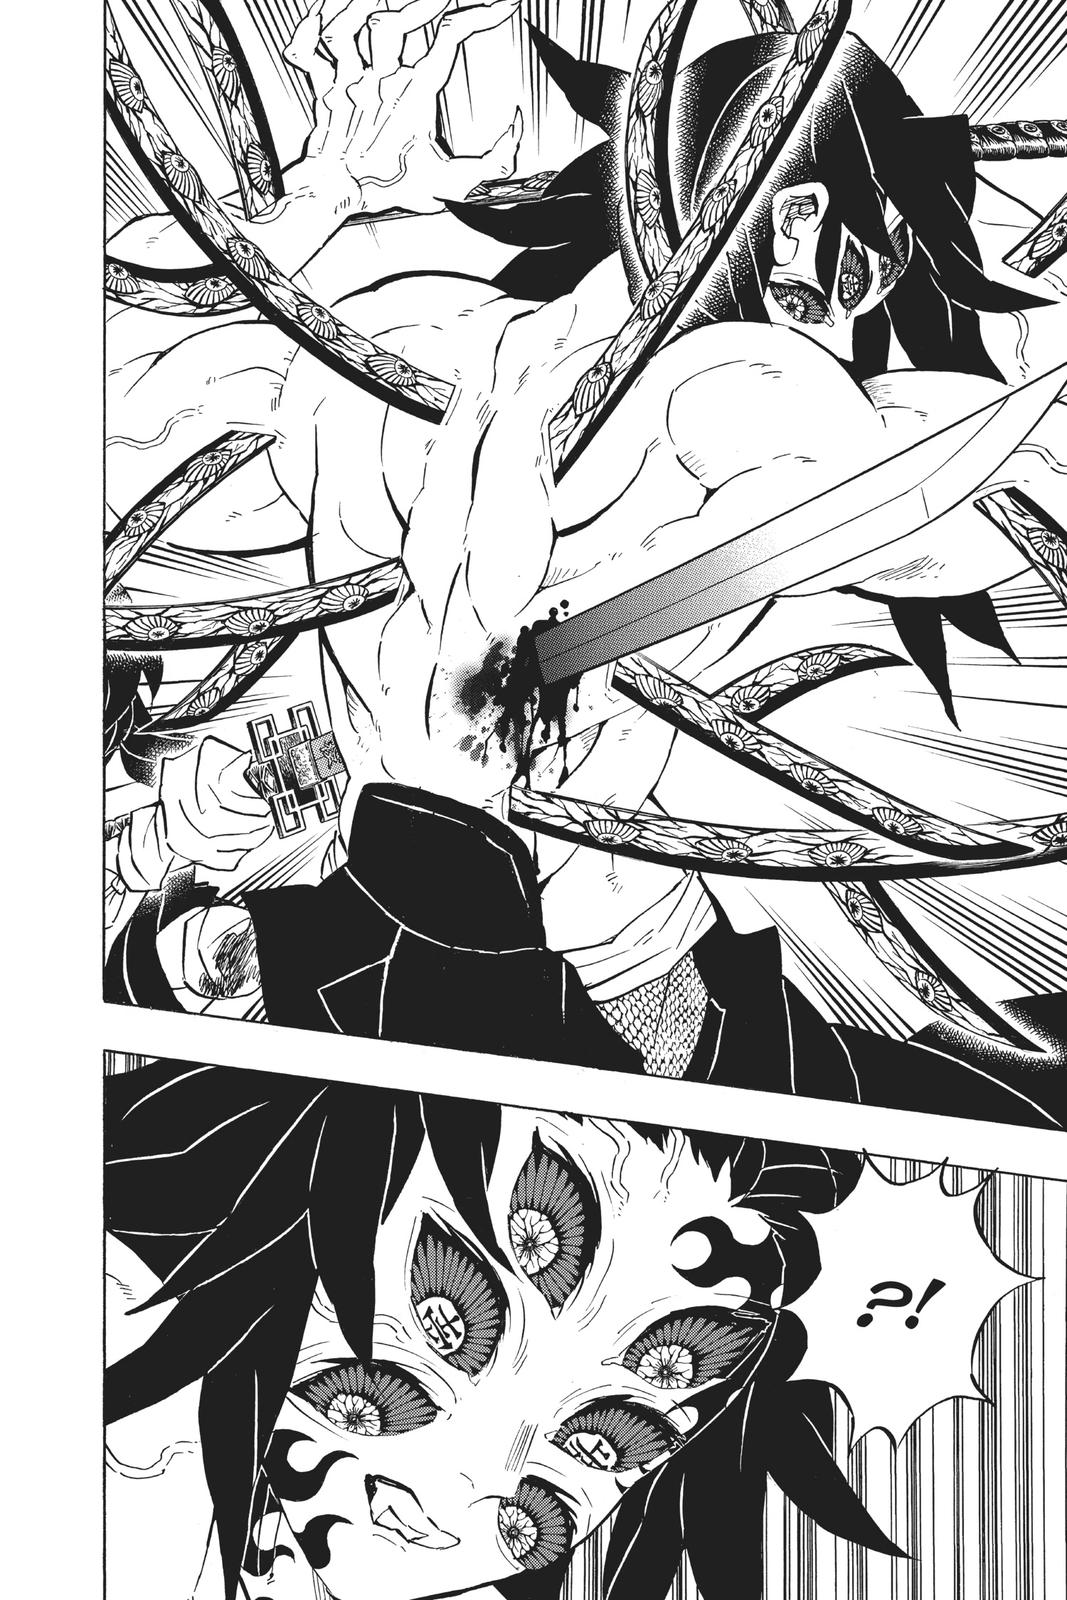 Demon Slayer Manga Manga Chapter - 175 - image 5